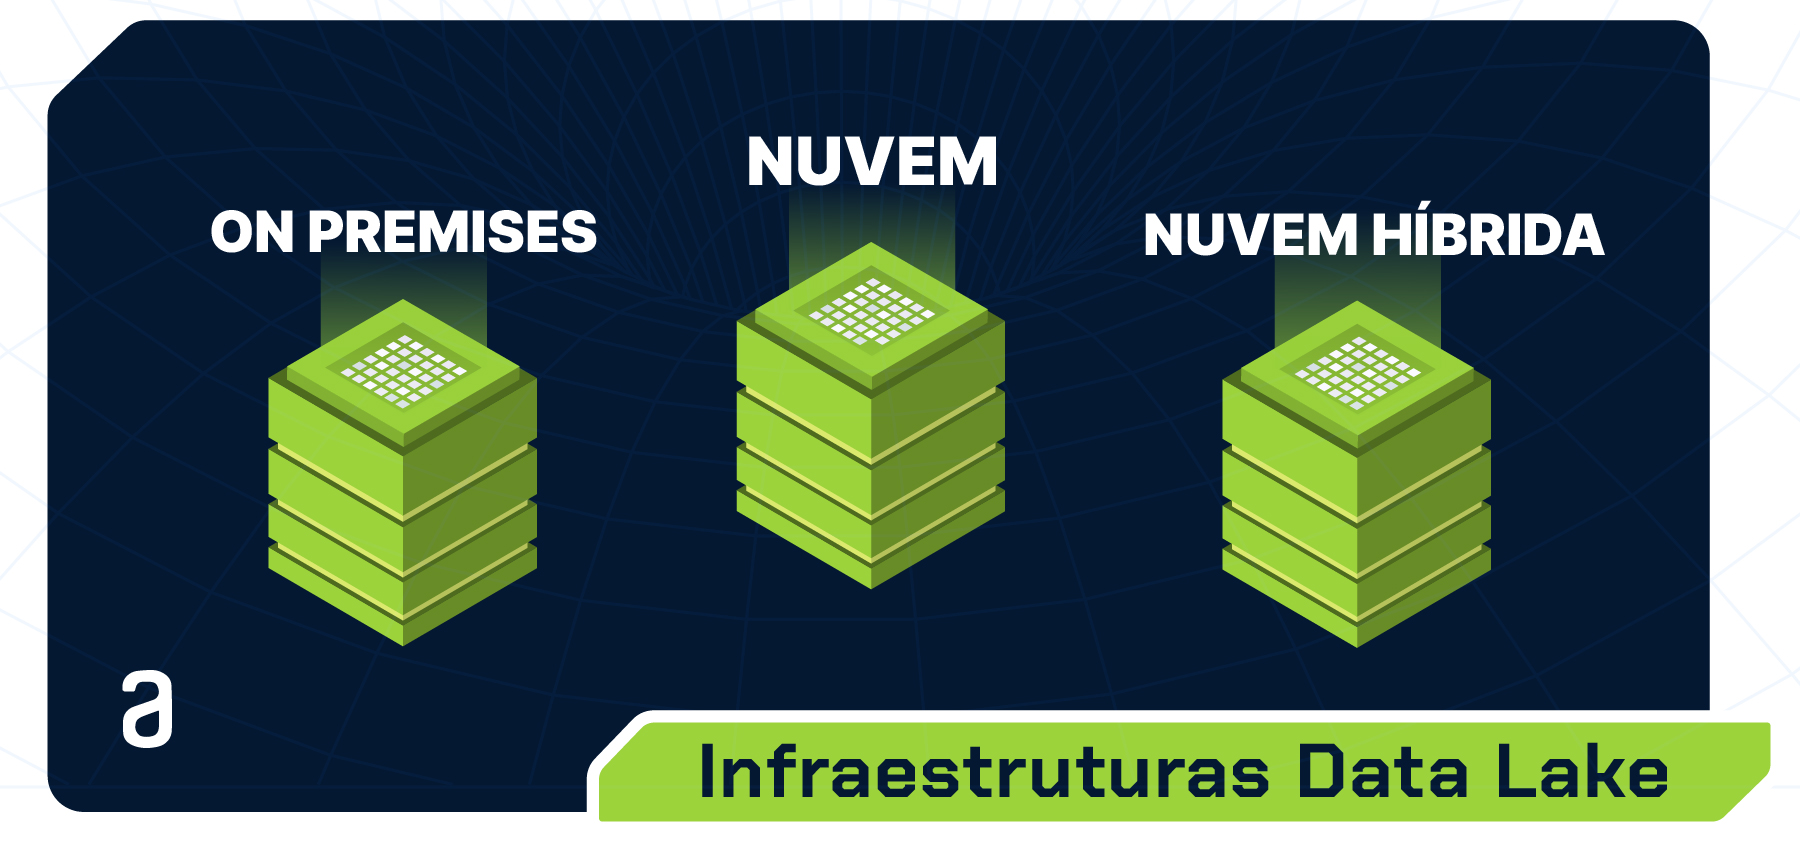 Figura com título “Infraestruturas Data Lake”. Na imagem, três pilares verdes dispostos horizontalmente. No primeiro pilar, a esquerda, o título “ON PREMISES”, no segundo pilar “NUVEM” e o terceiro pilar “NUVEM HÍBRIDA”.